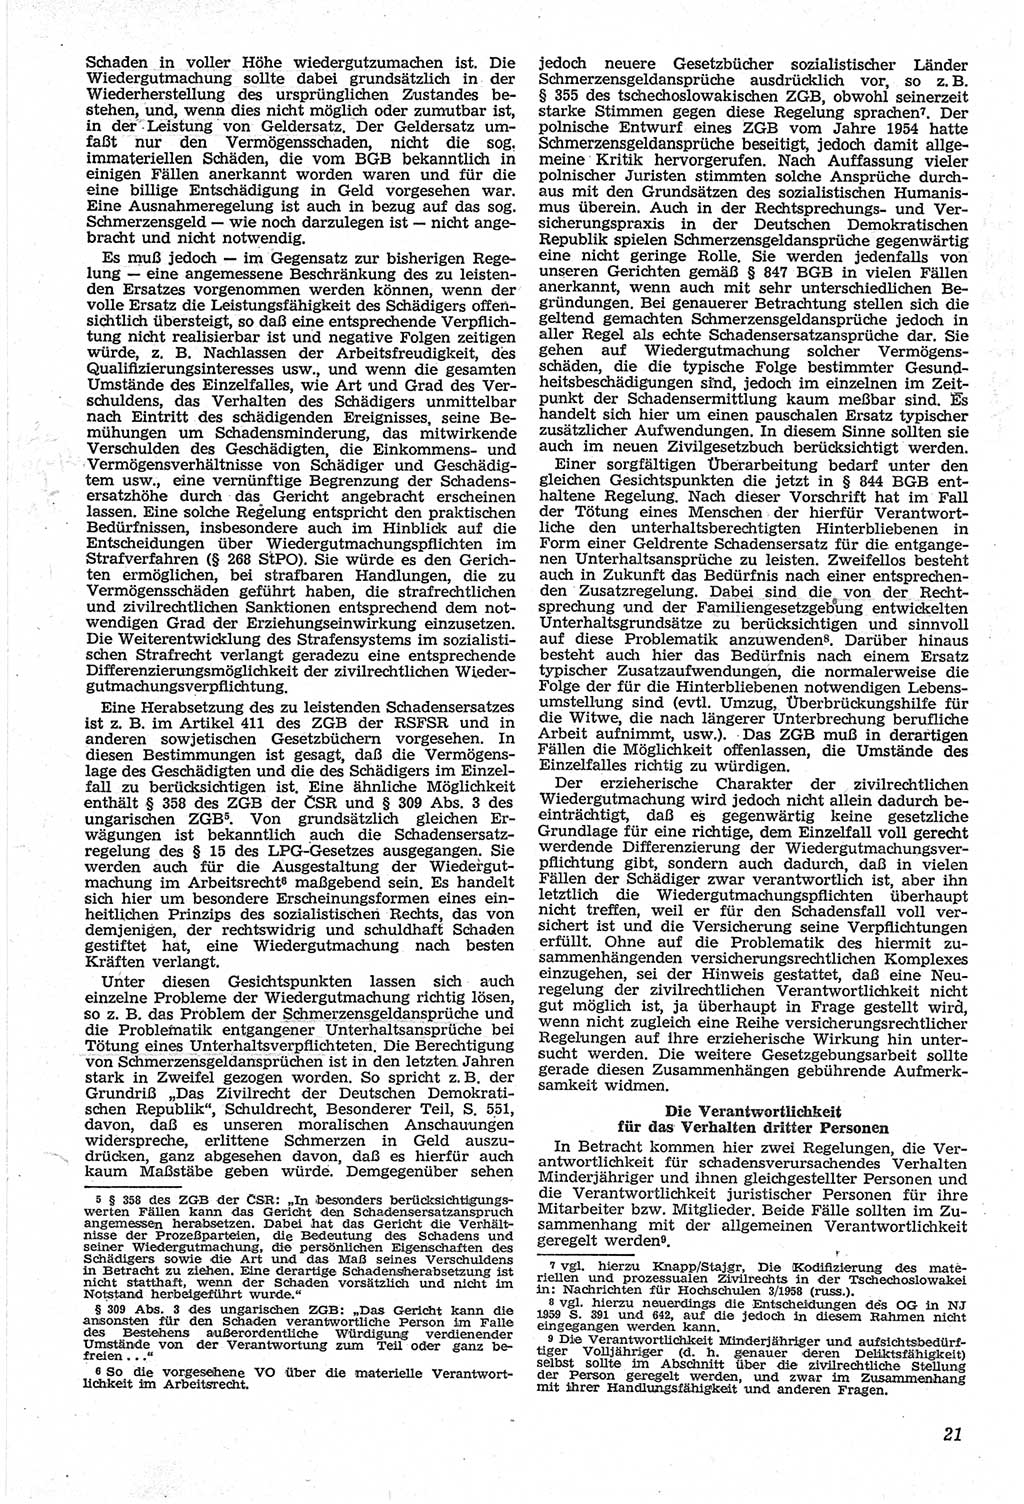 Neue Justiz (NJ), Zeitschrift für Recht und Rechtswissenschaft [Deutsche Demokratische Republik (DDR)], 14. Jahrgang 1960, Seite 21 (NJ DDR 1960, S. 21)